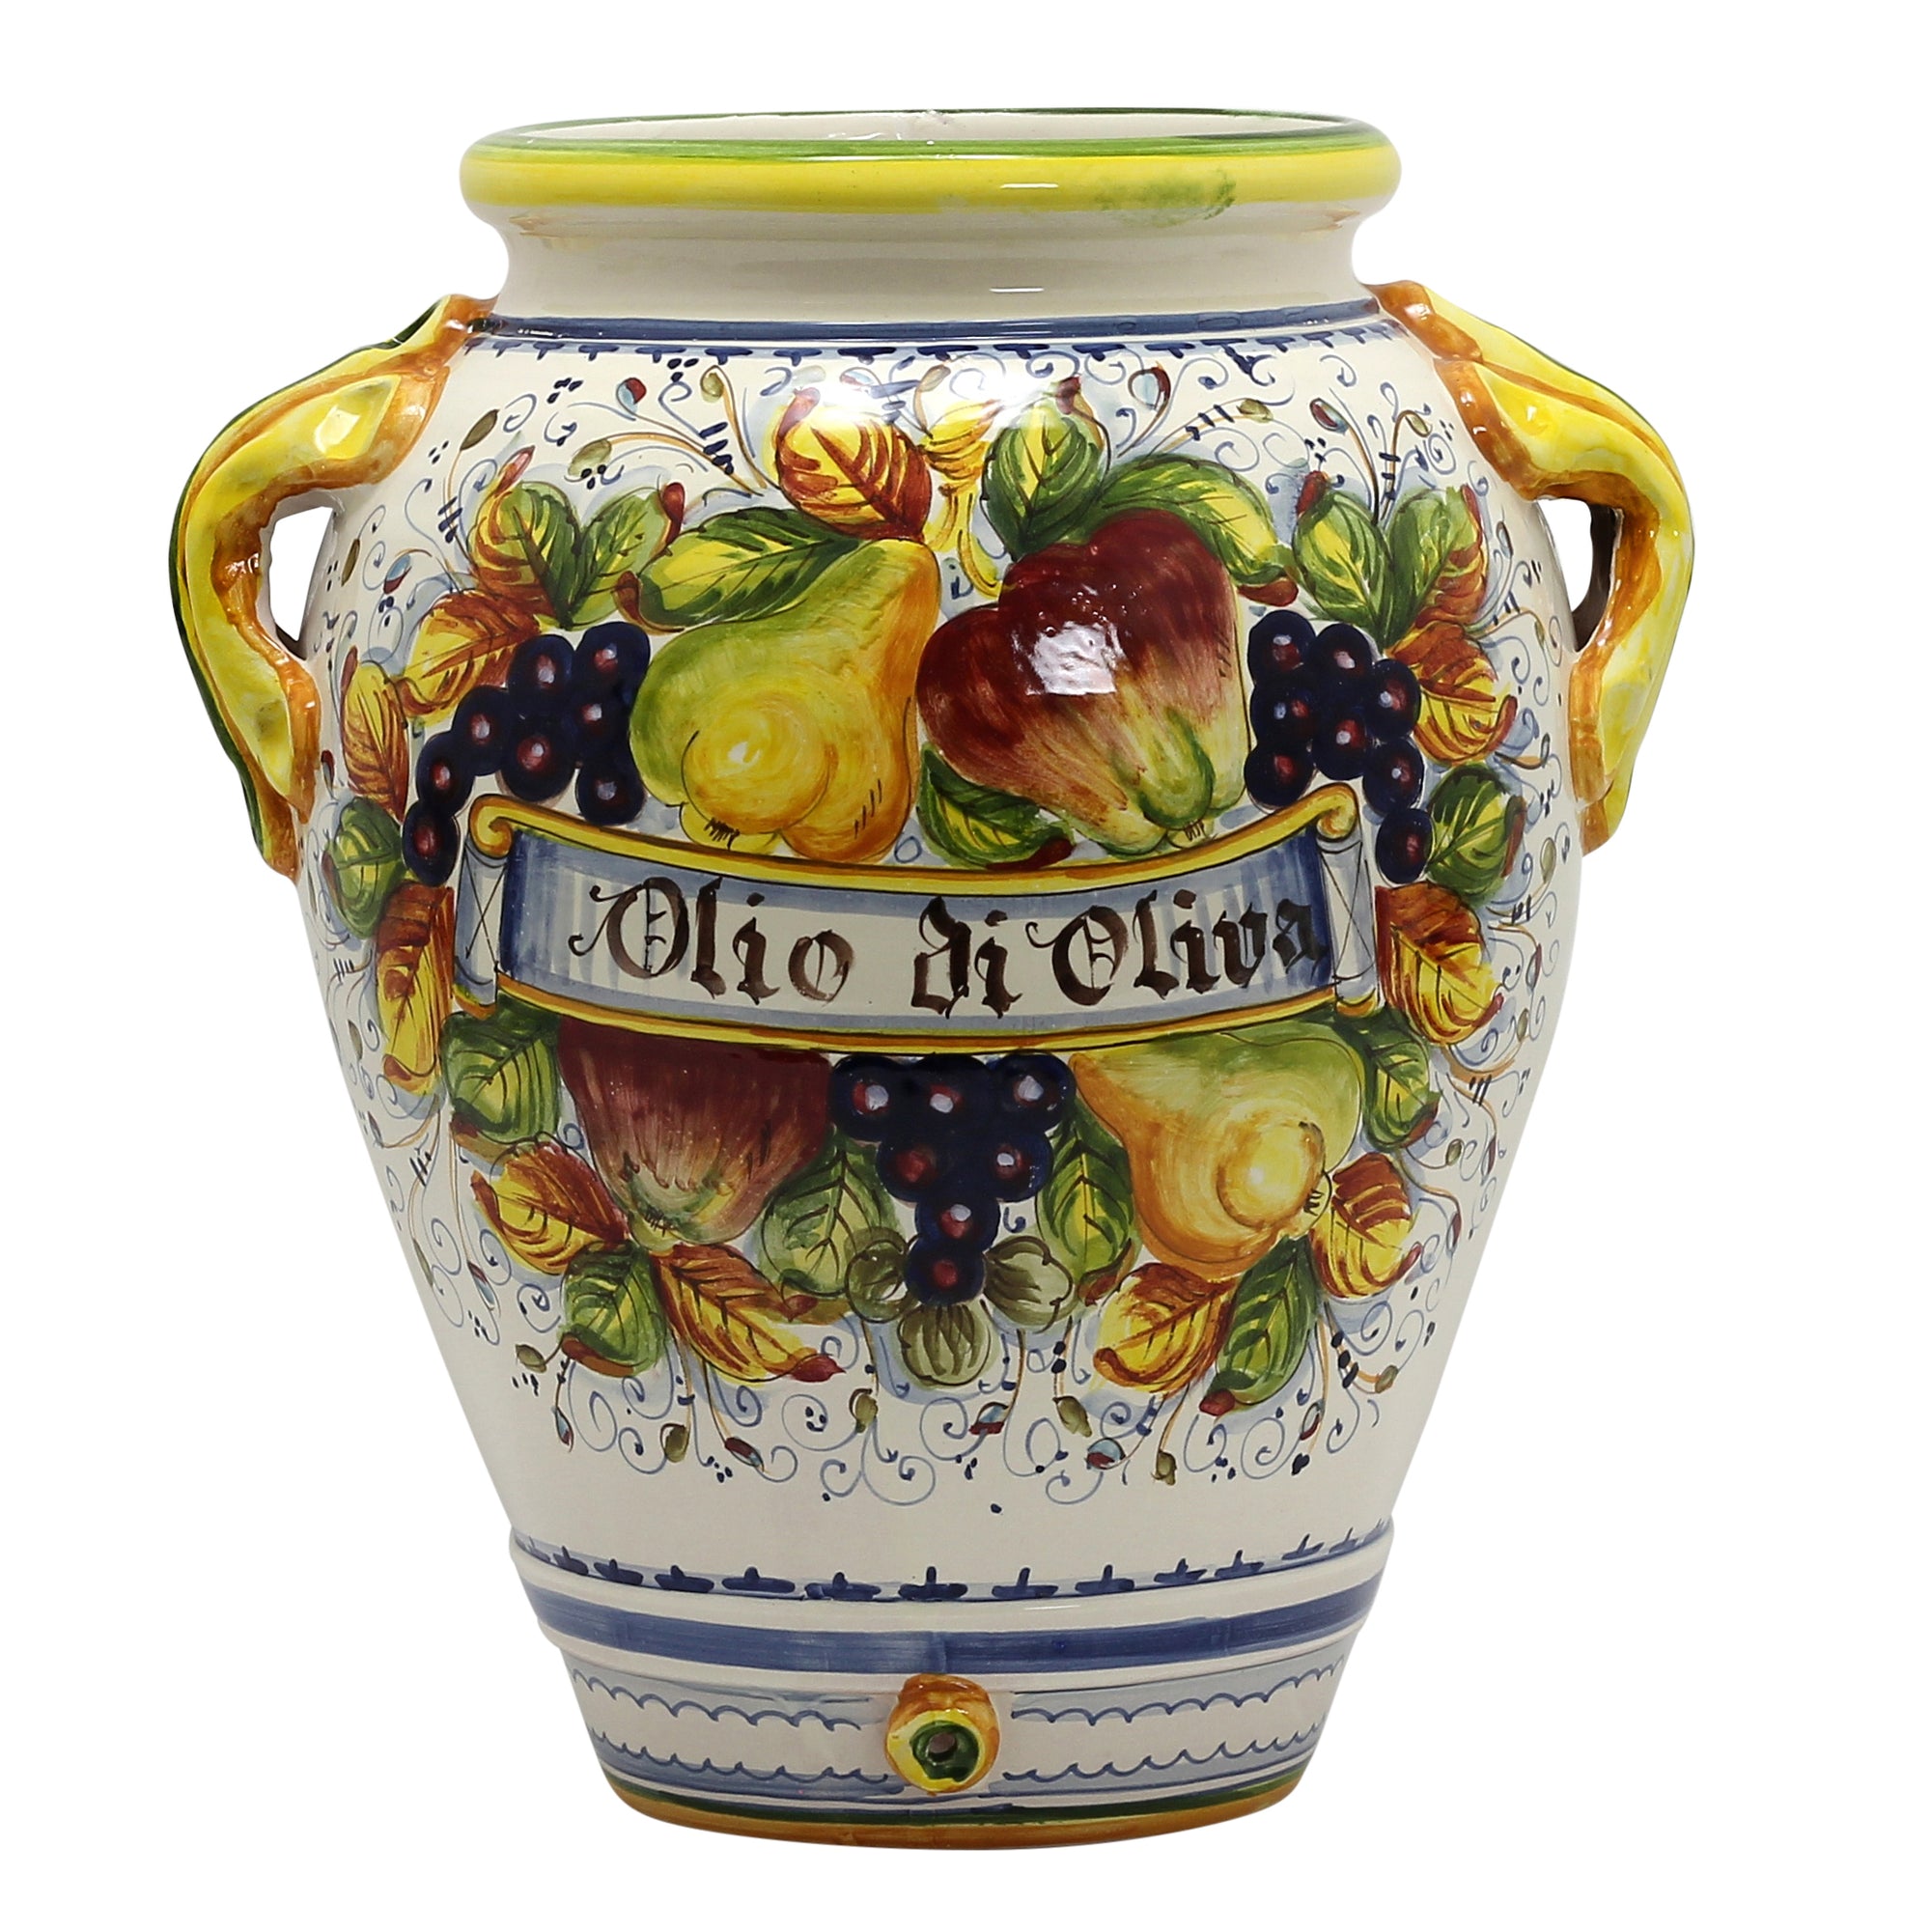 FRUTTA: Vase Umbrella stand with 'Olio di Oliva' (OLIVE Oil) script. - Artistica.com